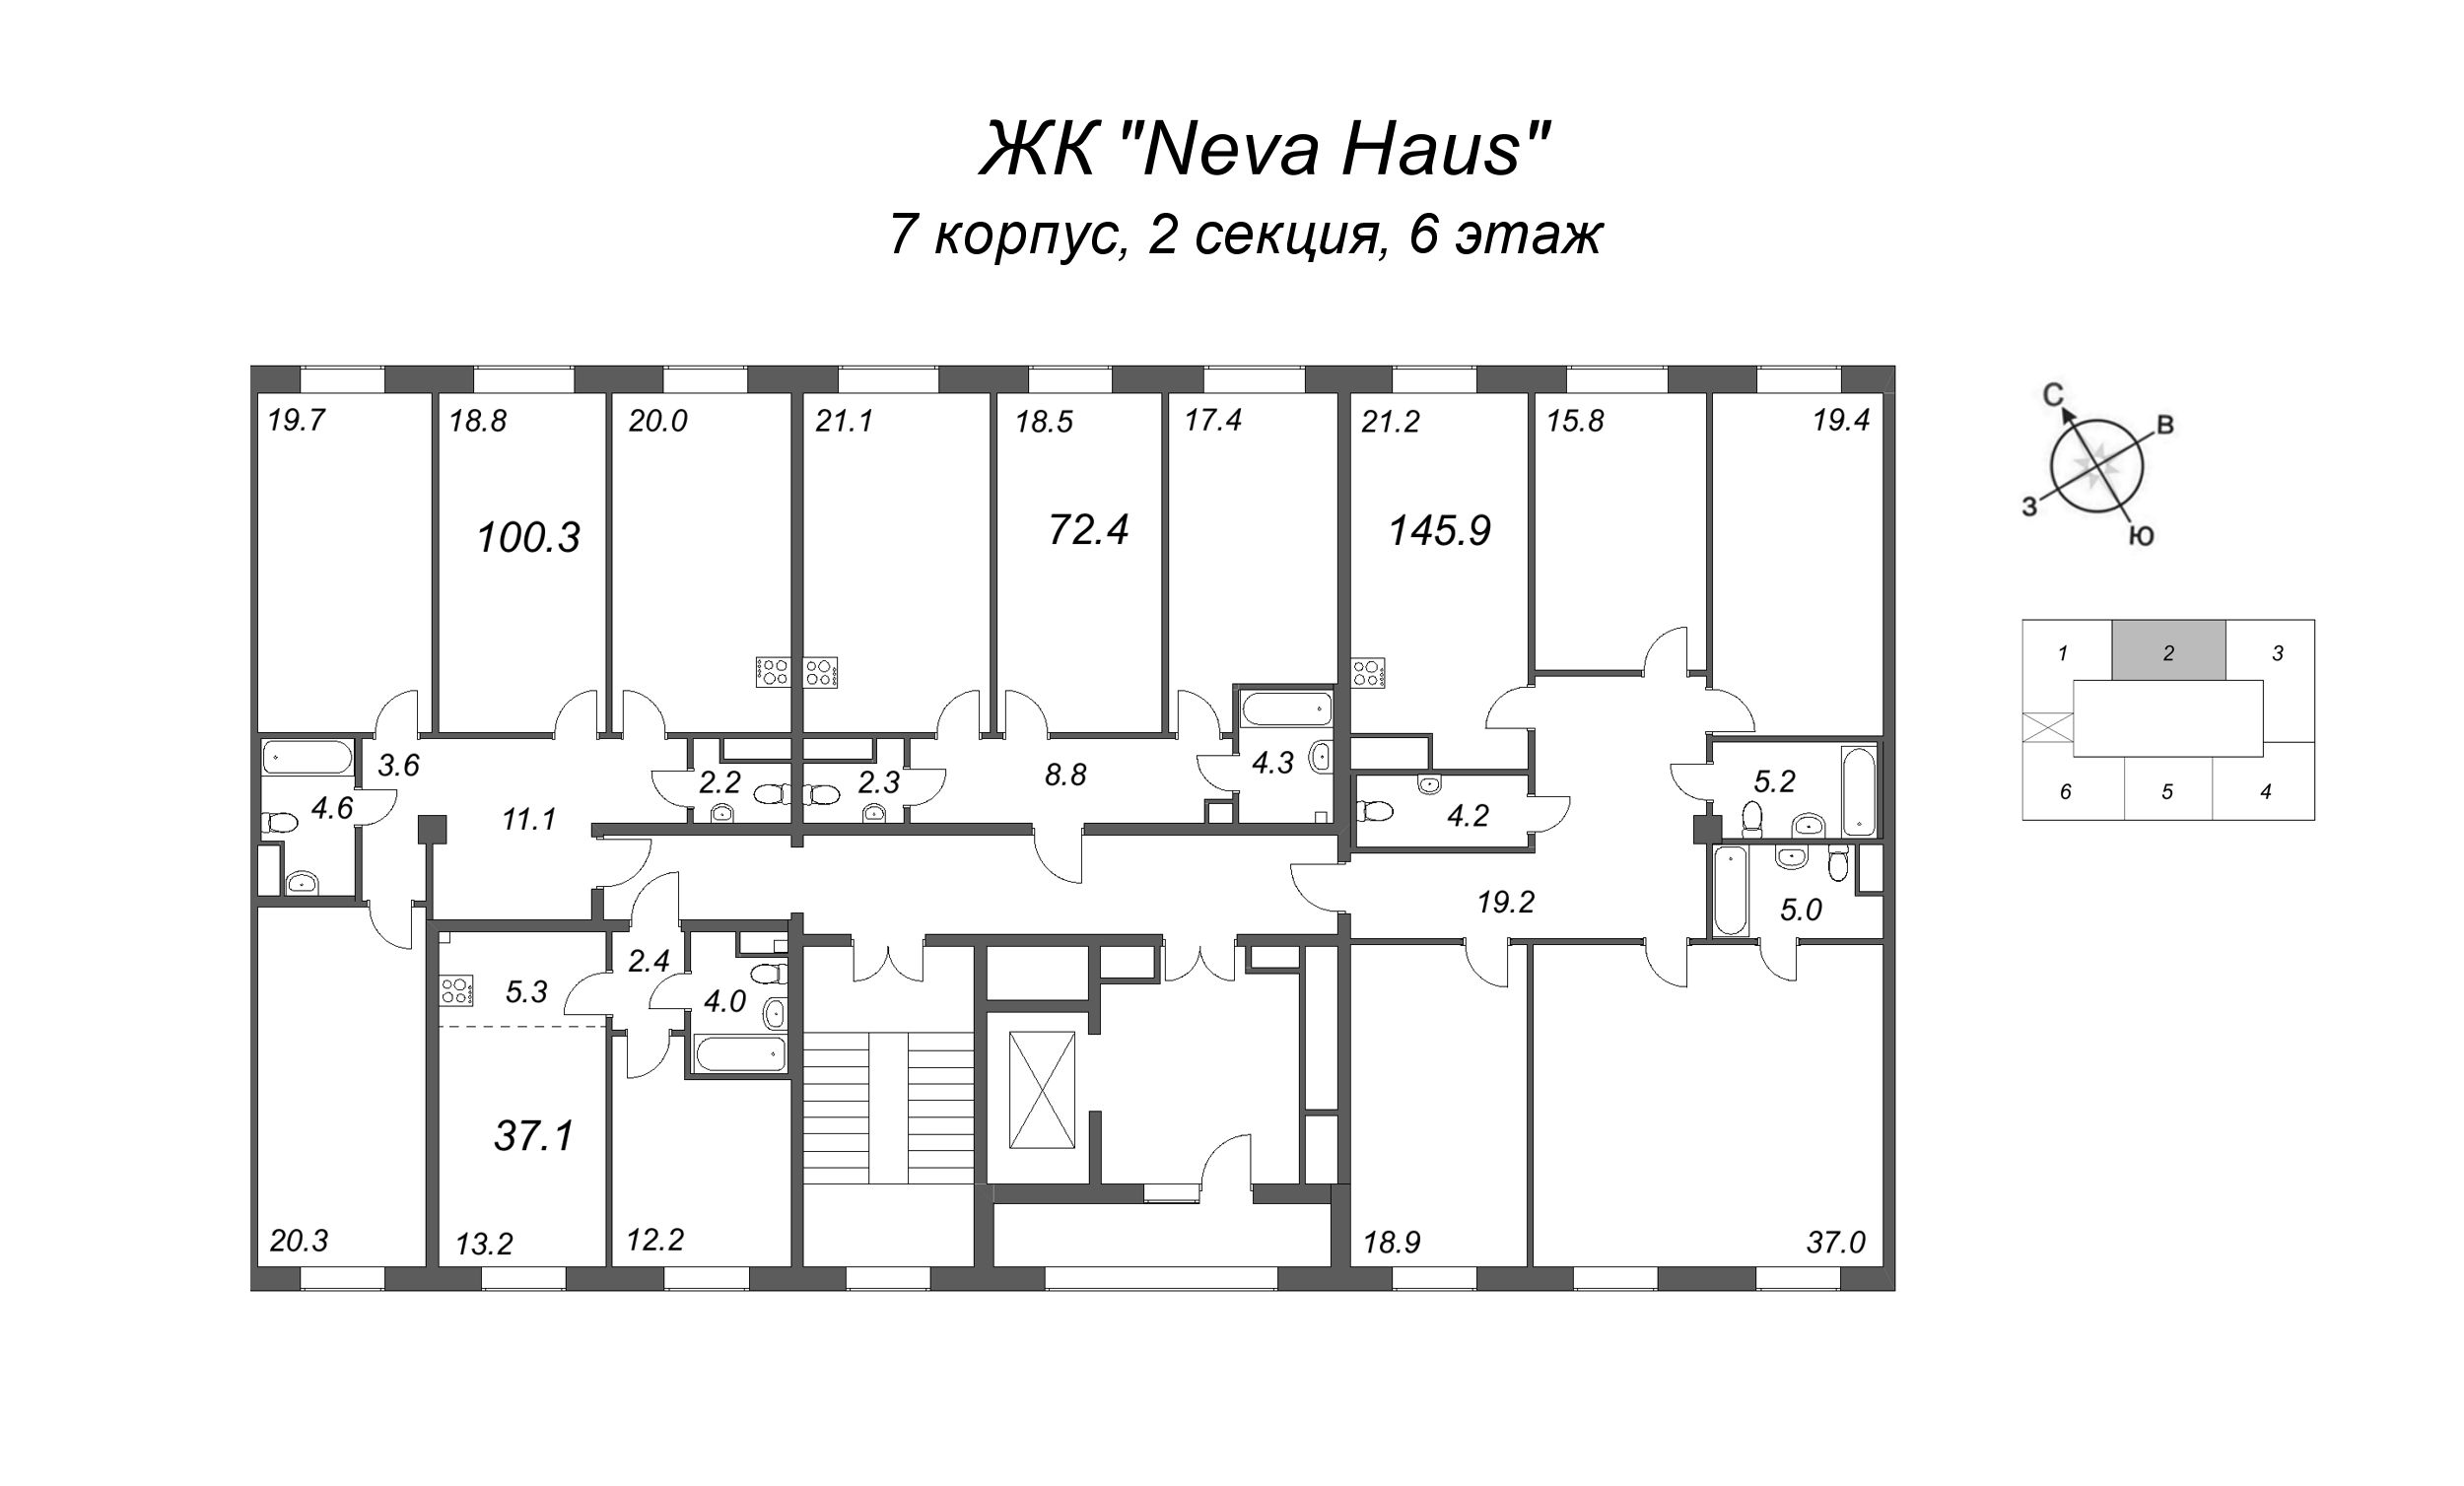 4-комнатная (Евро) квартира, 101.1 м² в ЖК "Neva Haus" - планировка этажа